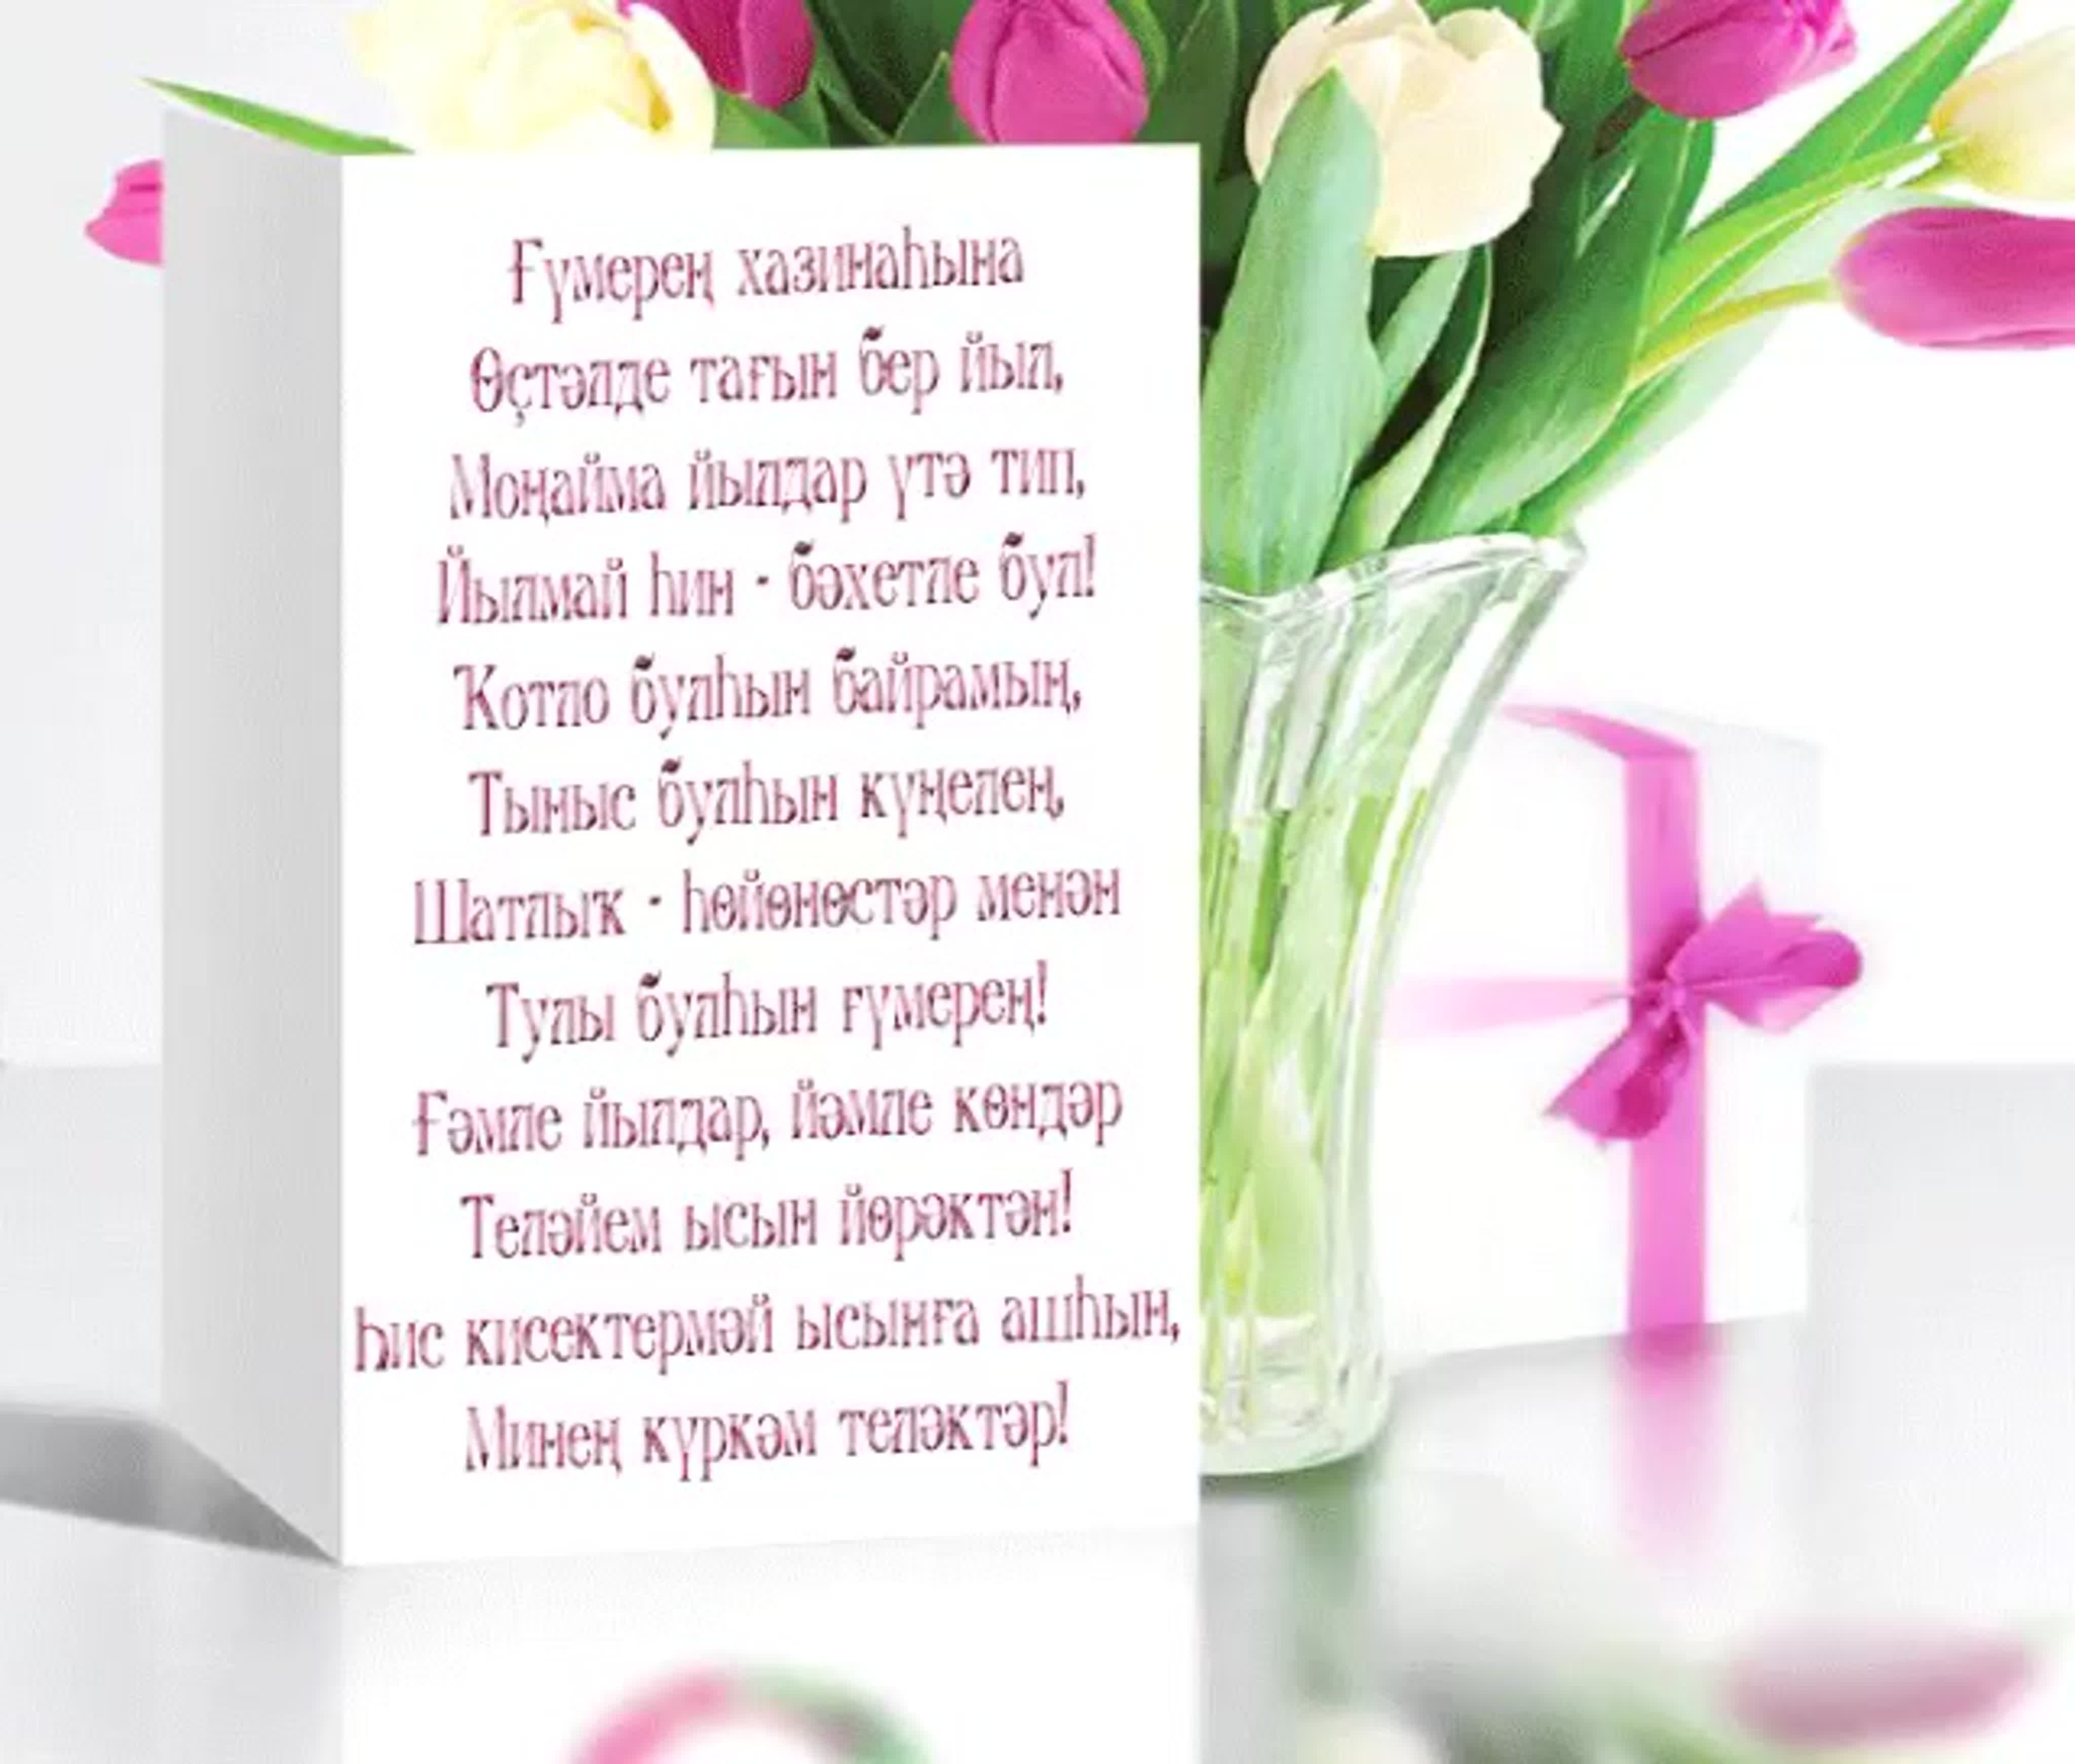 Поздравления башкирские открытки. Поздравления с днём рождения на башкирском. Поздравление с юбилеем на башкирском языке. Поздравления с днём рождения на башкирском языке. Поздравления с днём на башкирском языке.